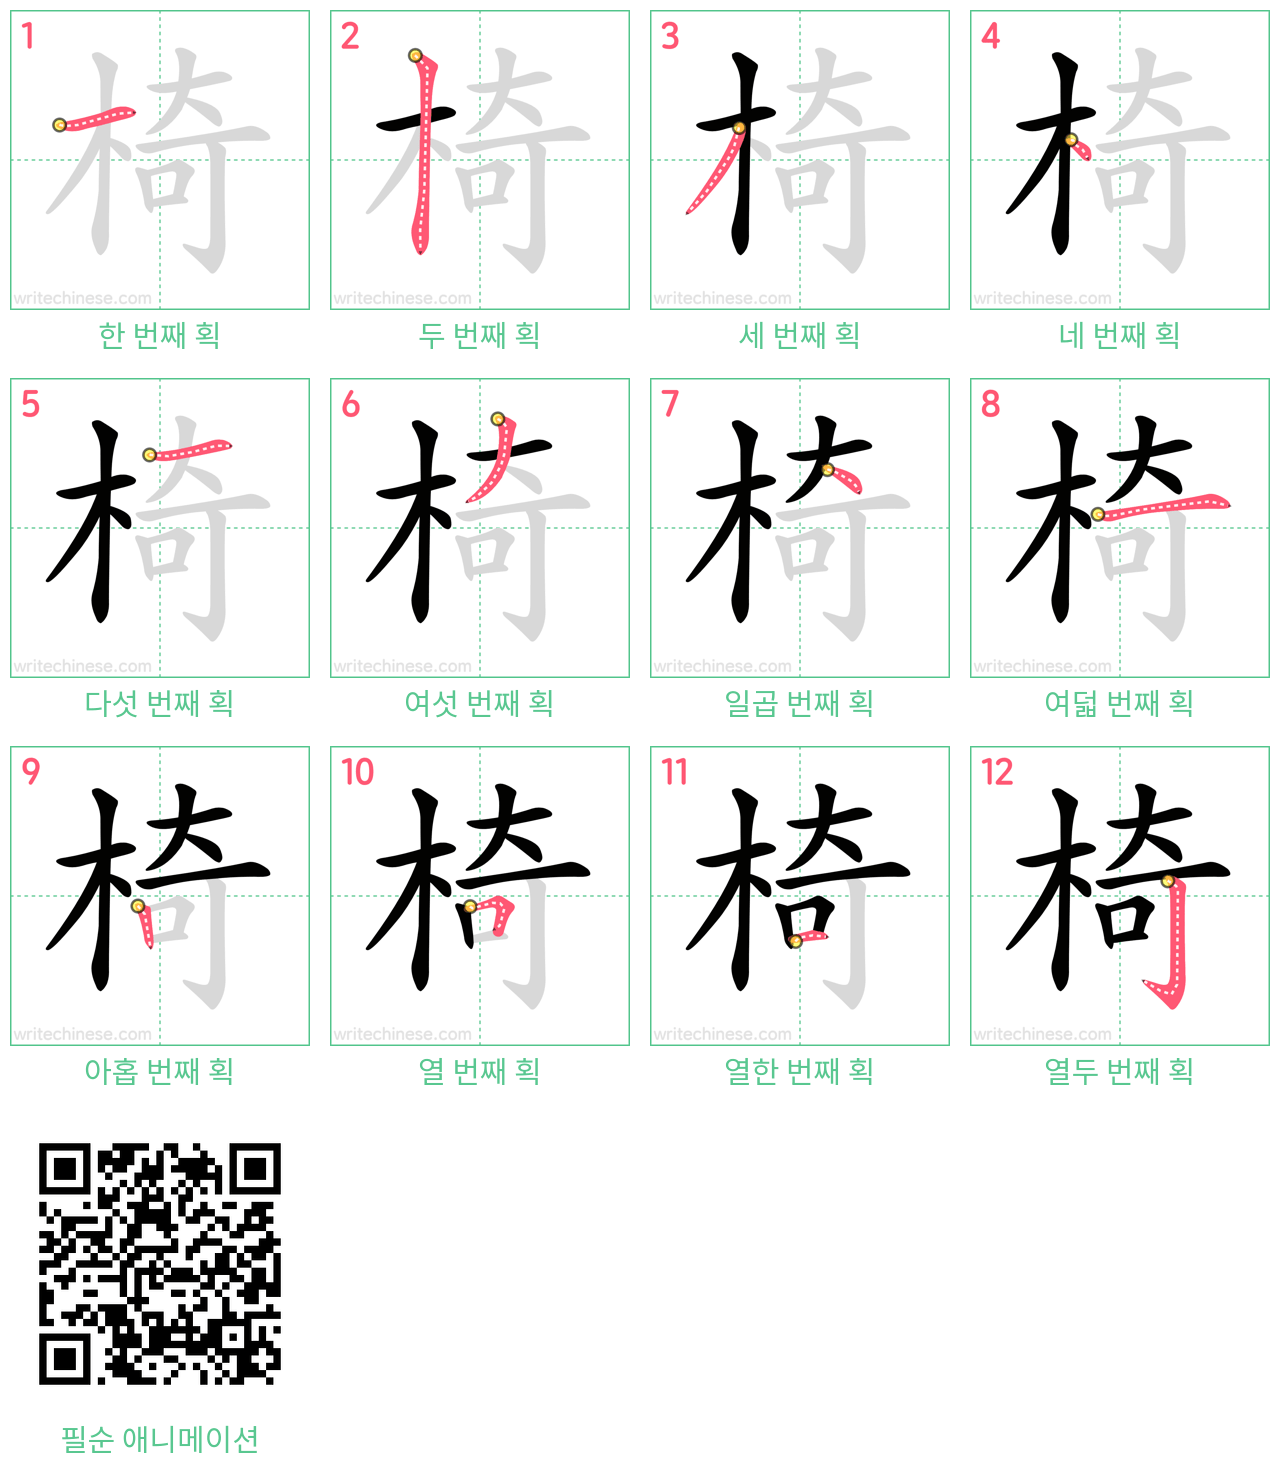 椅 step-by-step stroke order diagrams